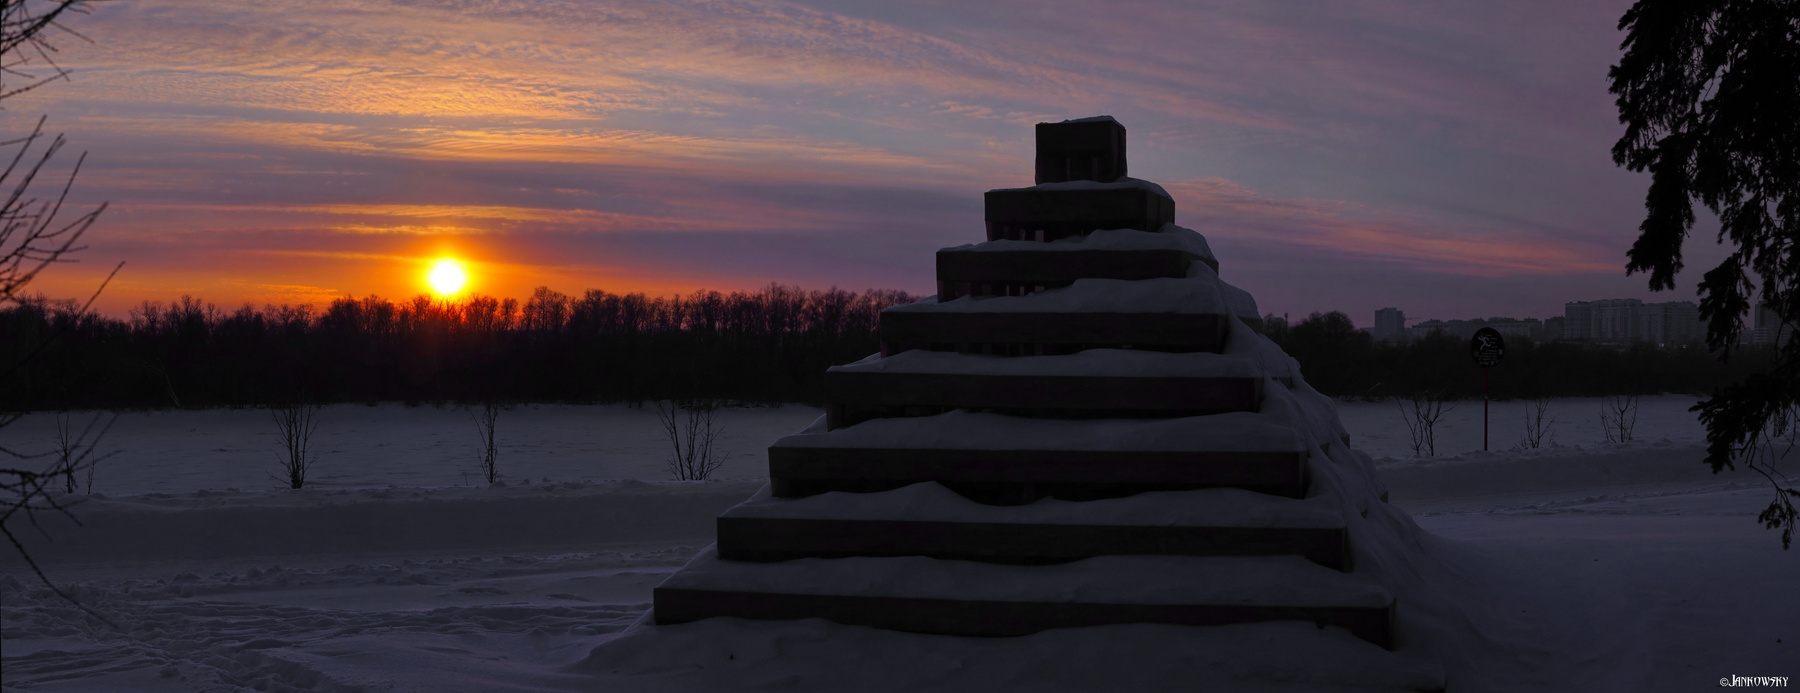 Зиккурат  на закате.  Панорама Зиккурат омск закат мороз зимой Sigma 60mm Art сибирь парк деревянное для цветов сооружение Иртыш